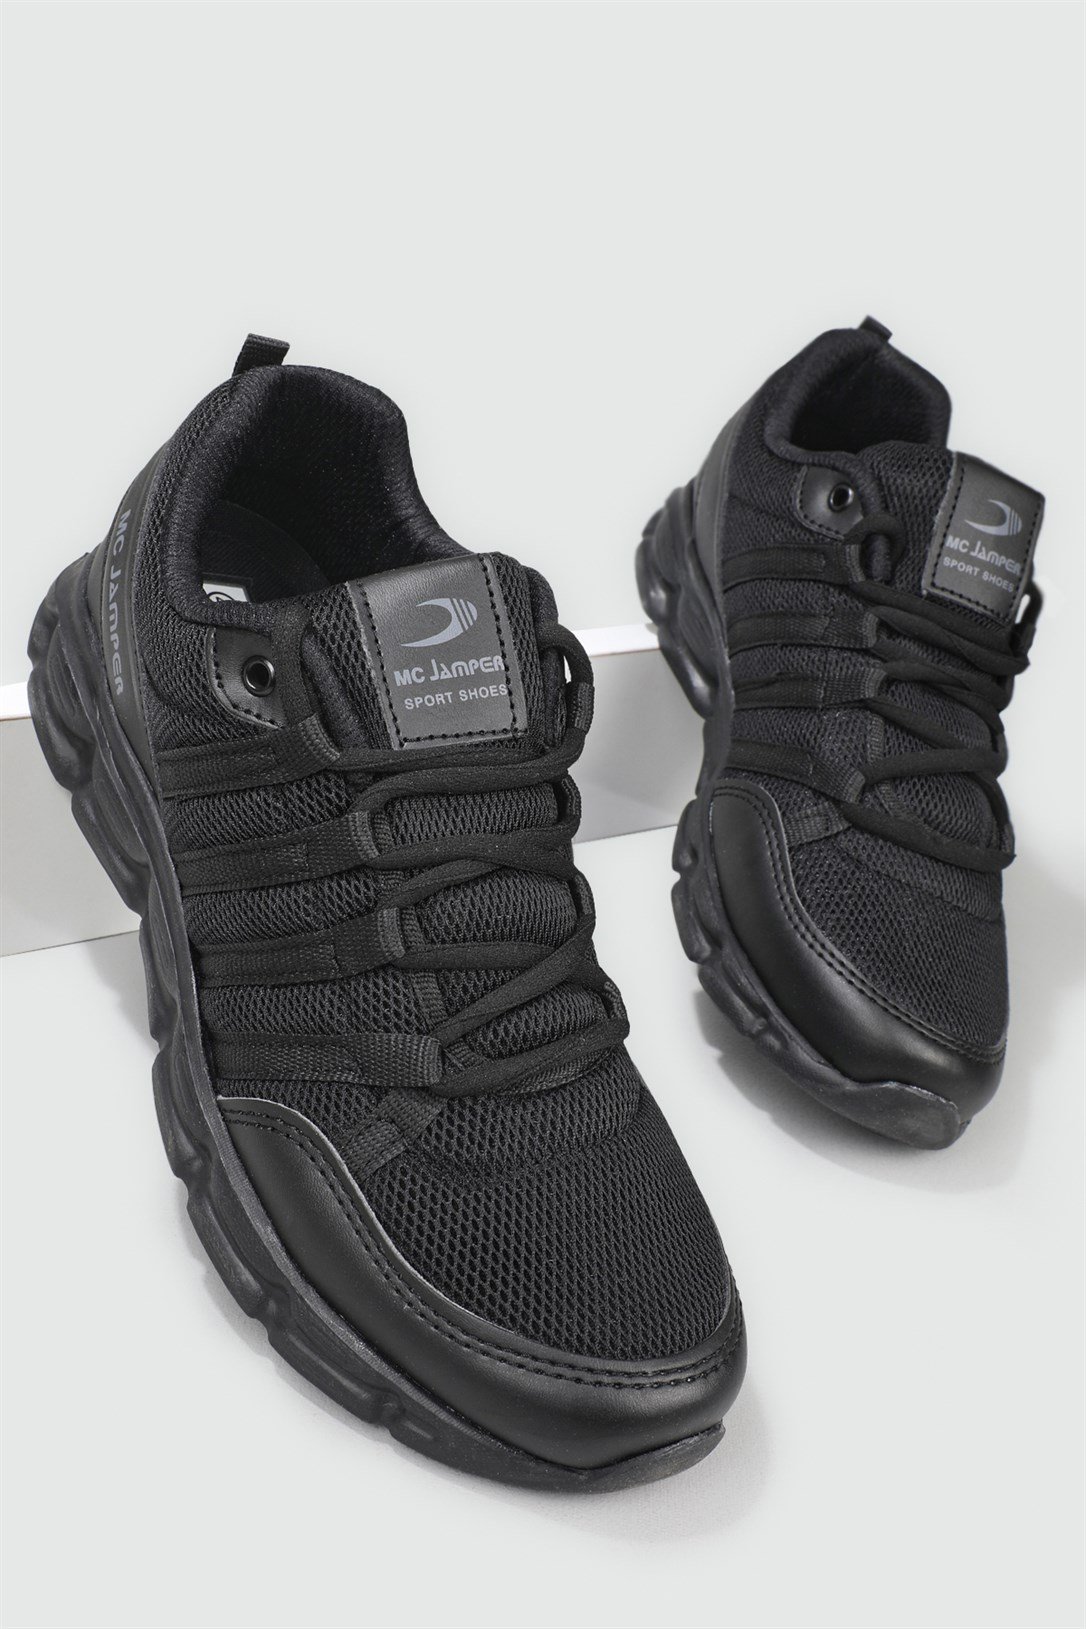 Jamper Sneakers Siyah Erkek Spor Ayakkabı 1876 | Ayakkabı City